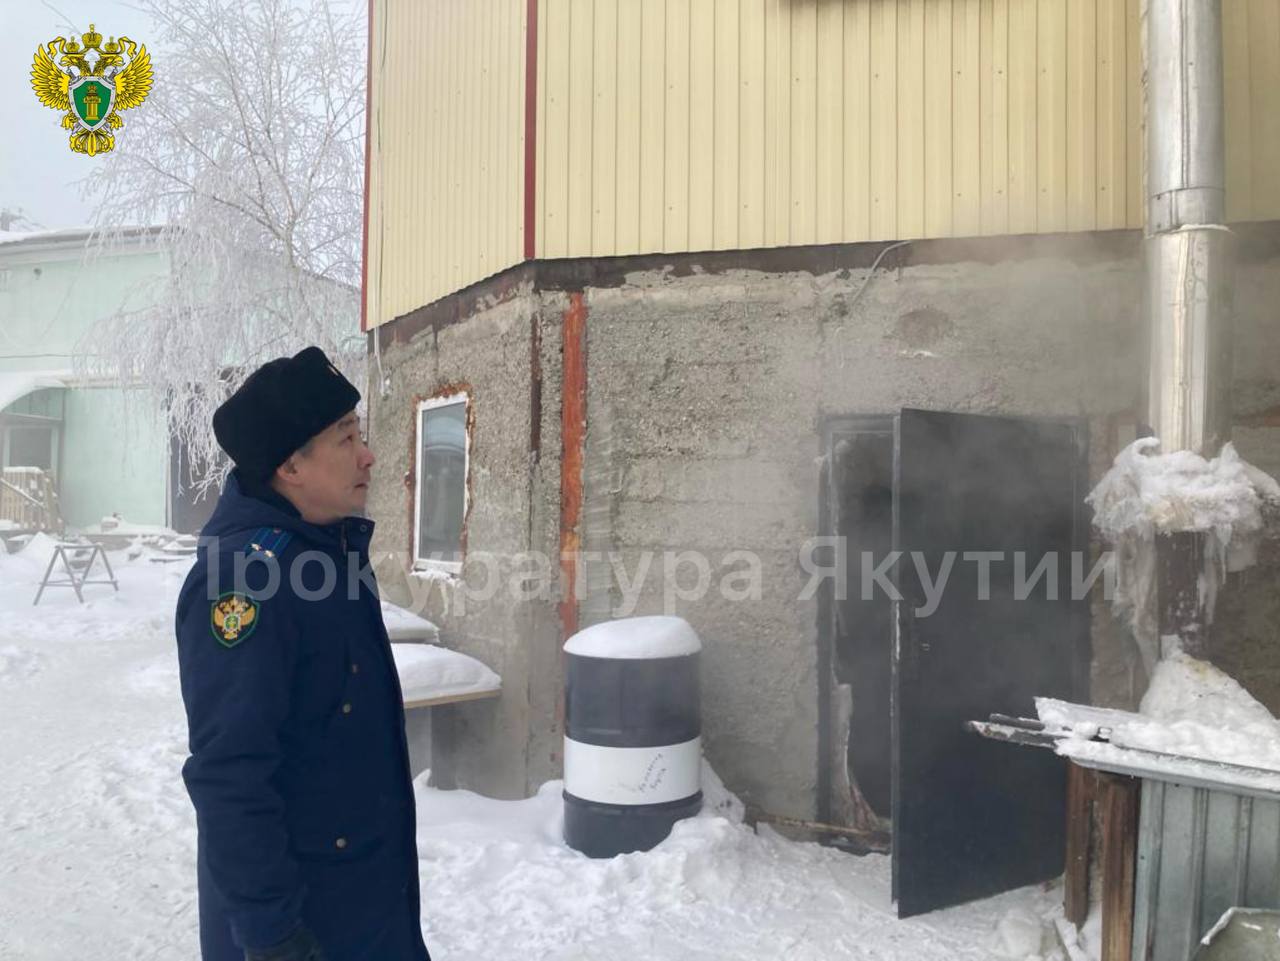 В Якутске в частном доме несколько человек отравились угарным газом. Погибла женщина